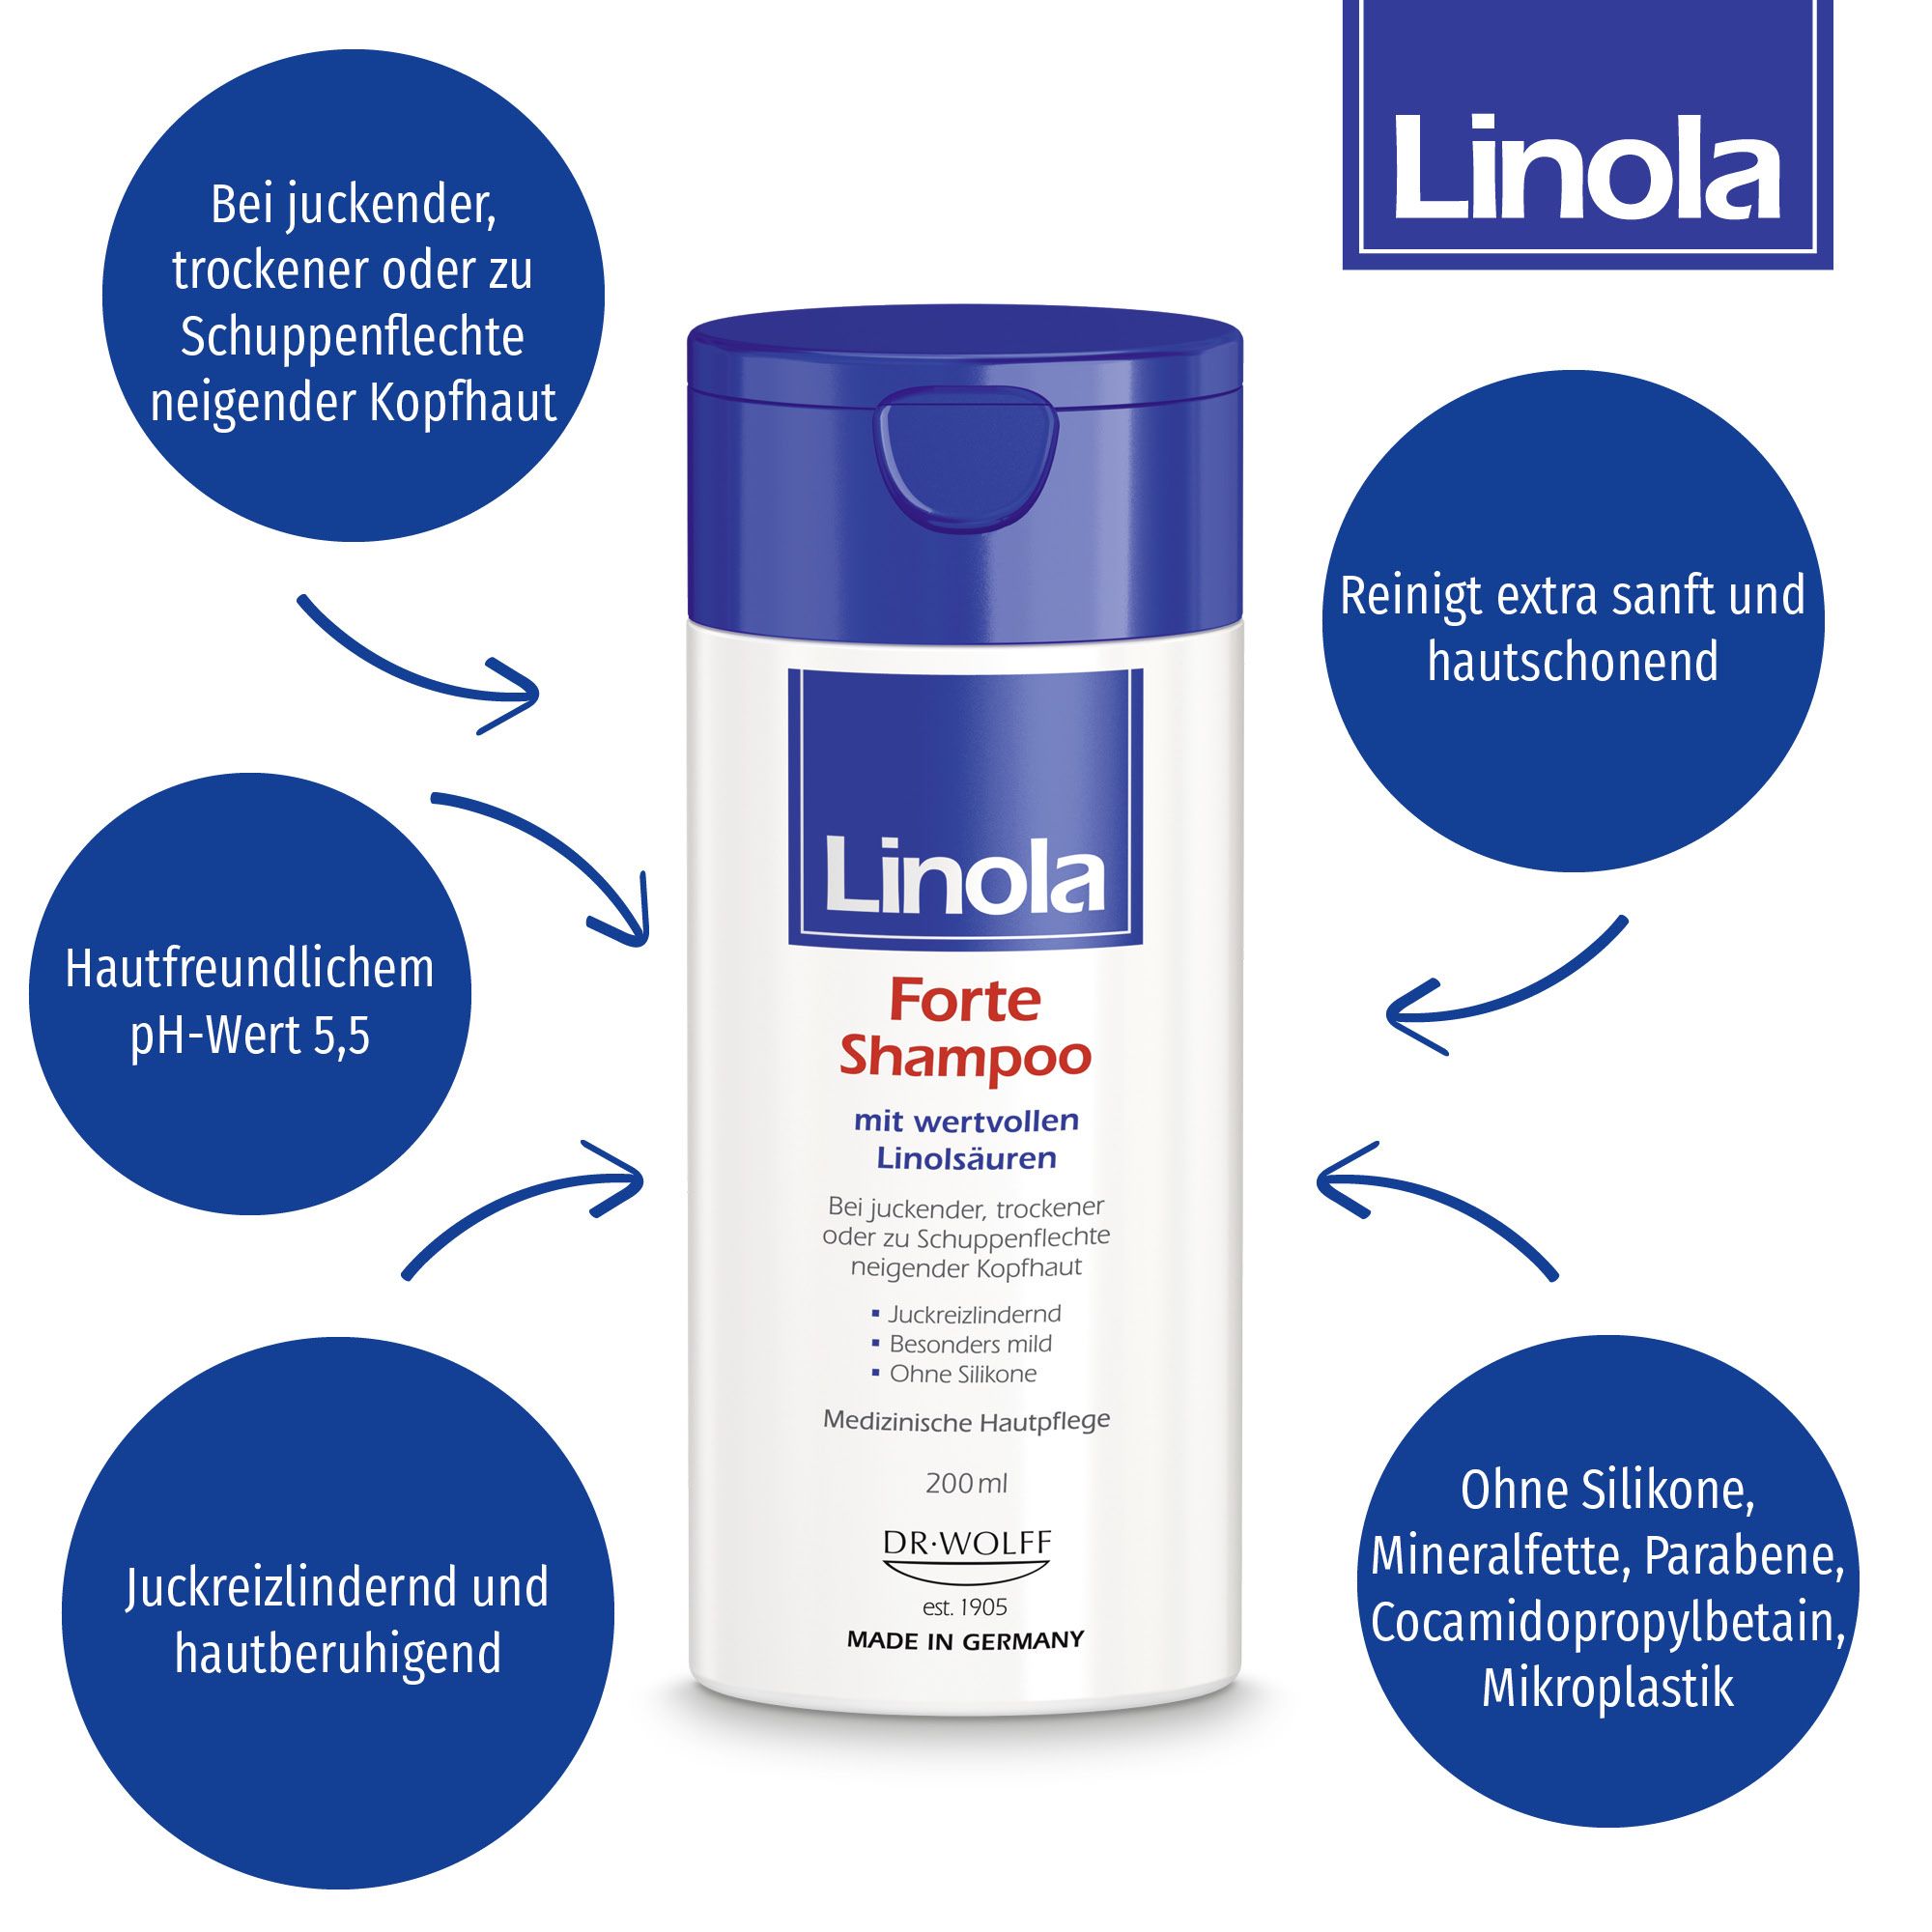 Linola Forte Shampoo - Haarpflege für juckende, trockene oder zu Schuppenflechte neigende Kopfhaut